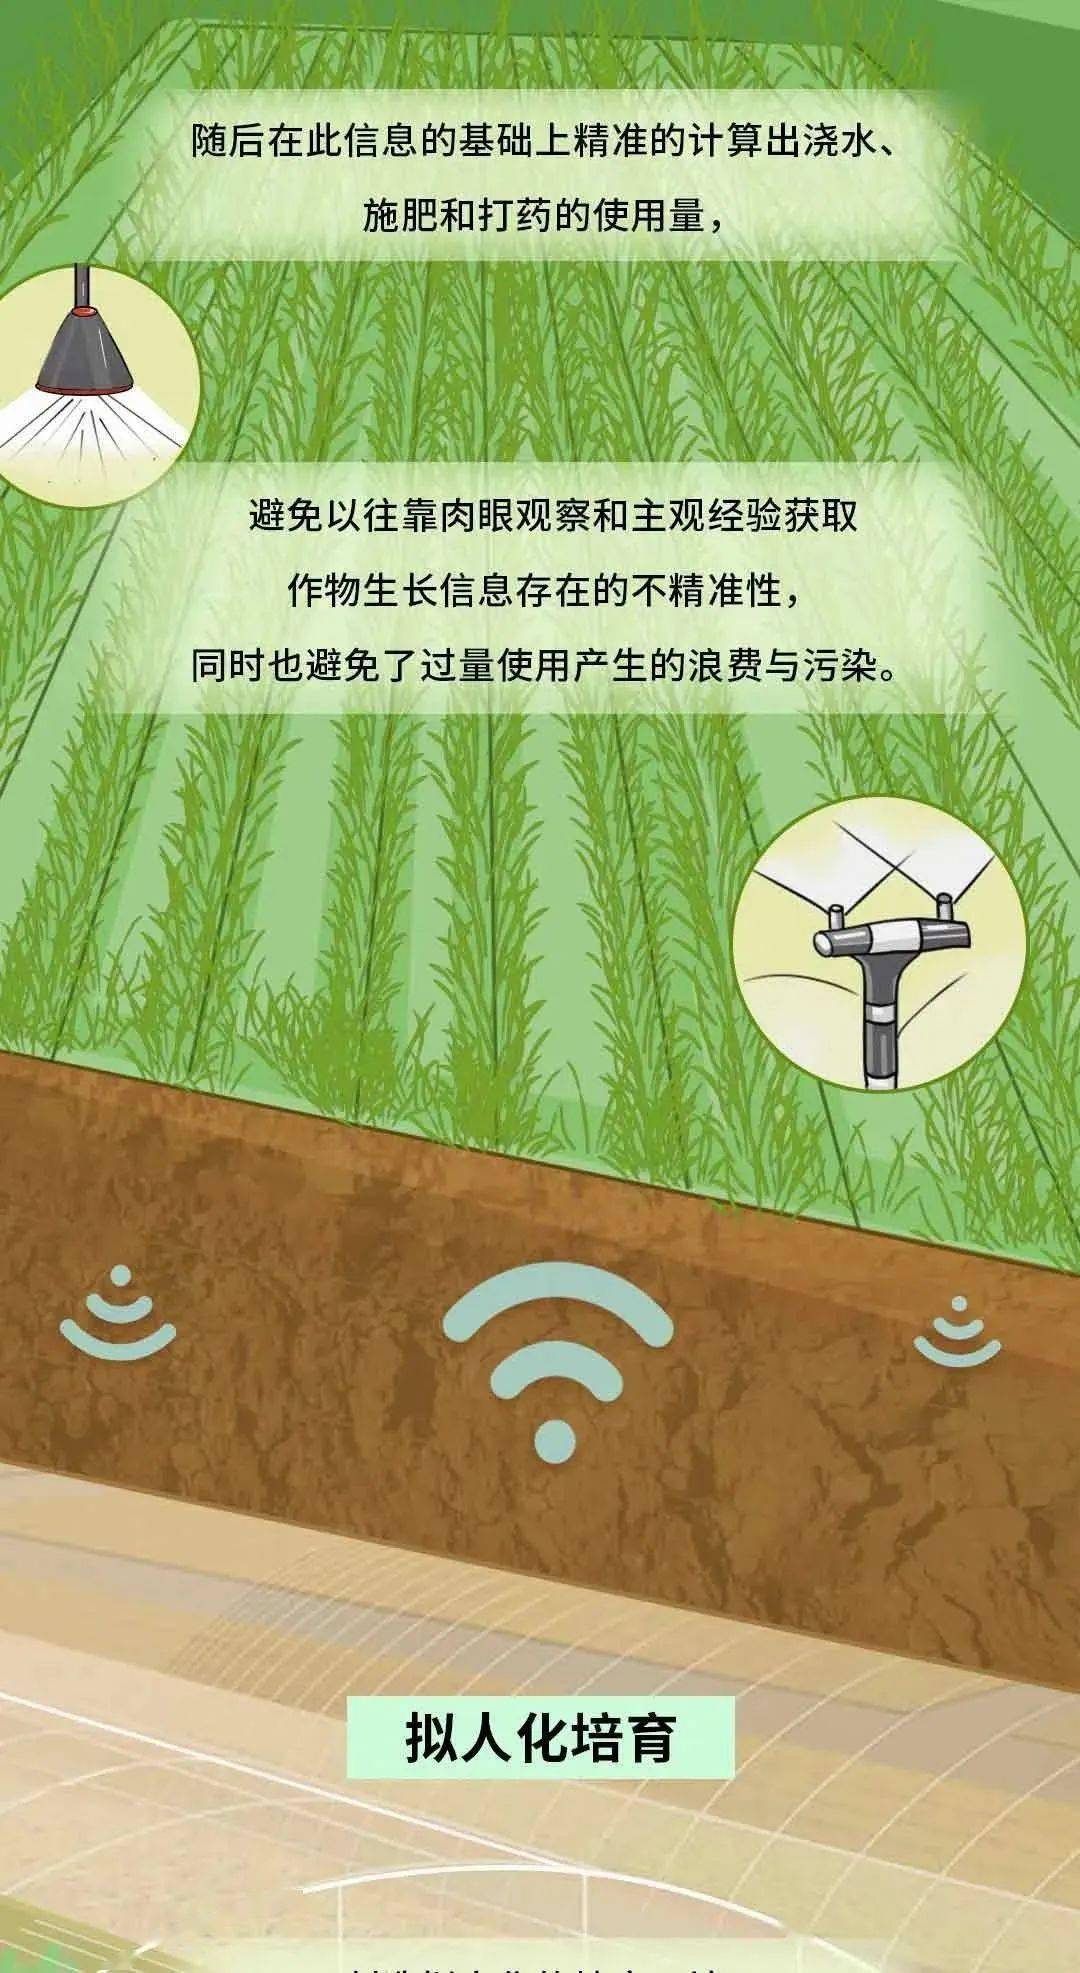 【科普汶上•汶上科普天天见】5G科普 | 5G+智慧农业，如何改变我们的生活？插图6